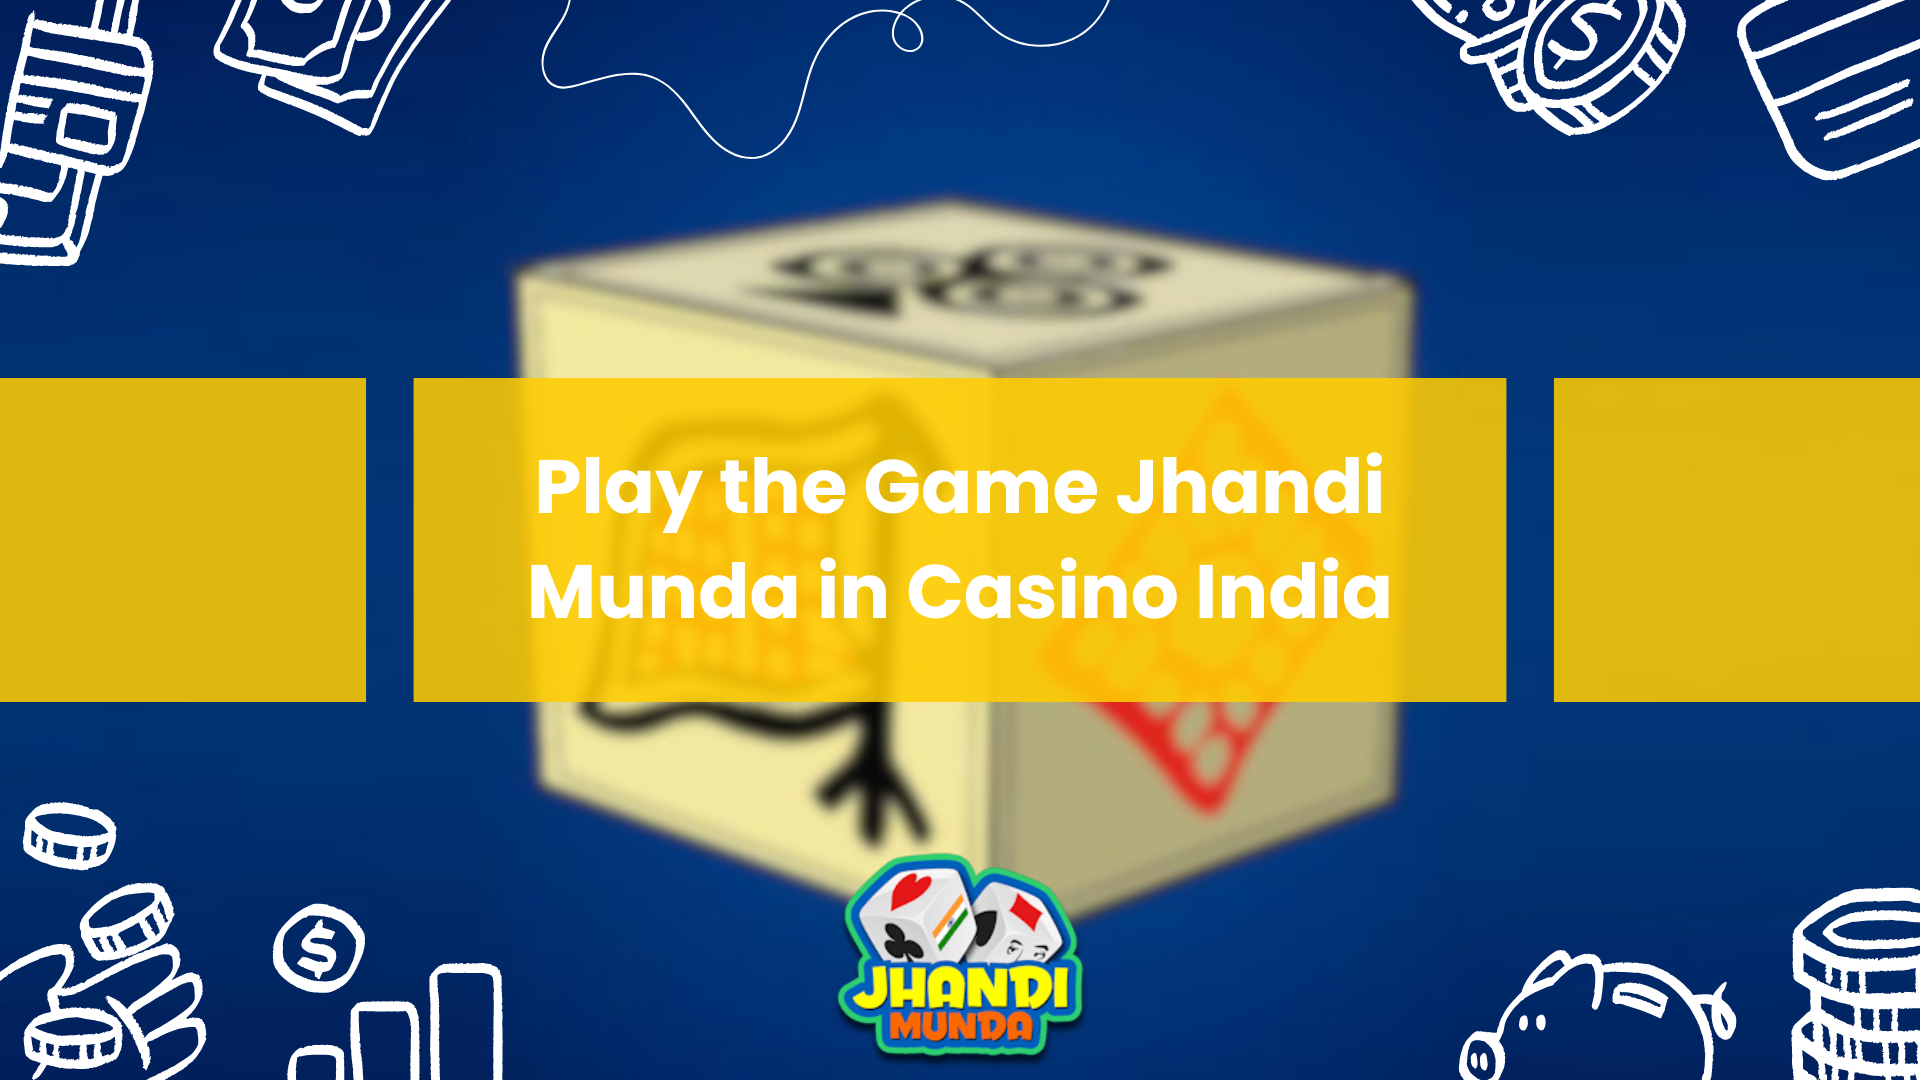 Play the Game Jhandi Munda in Casino India